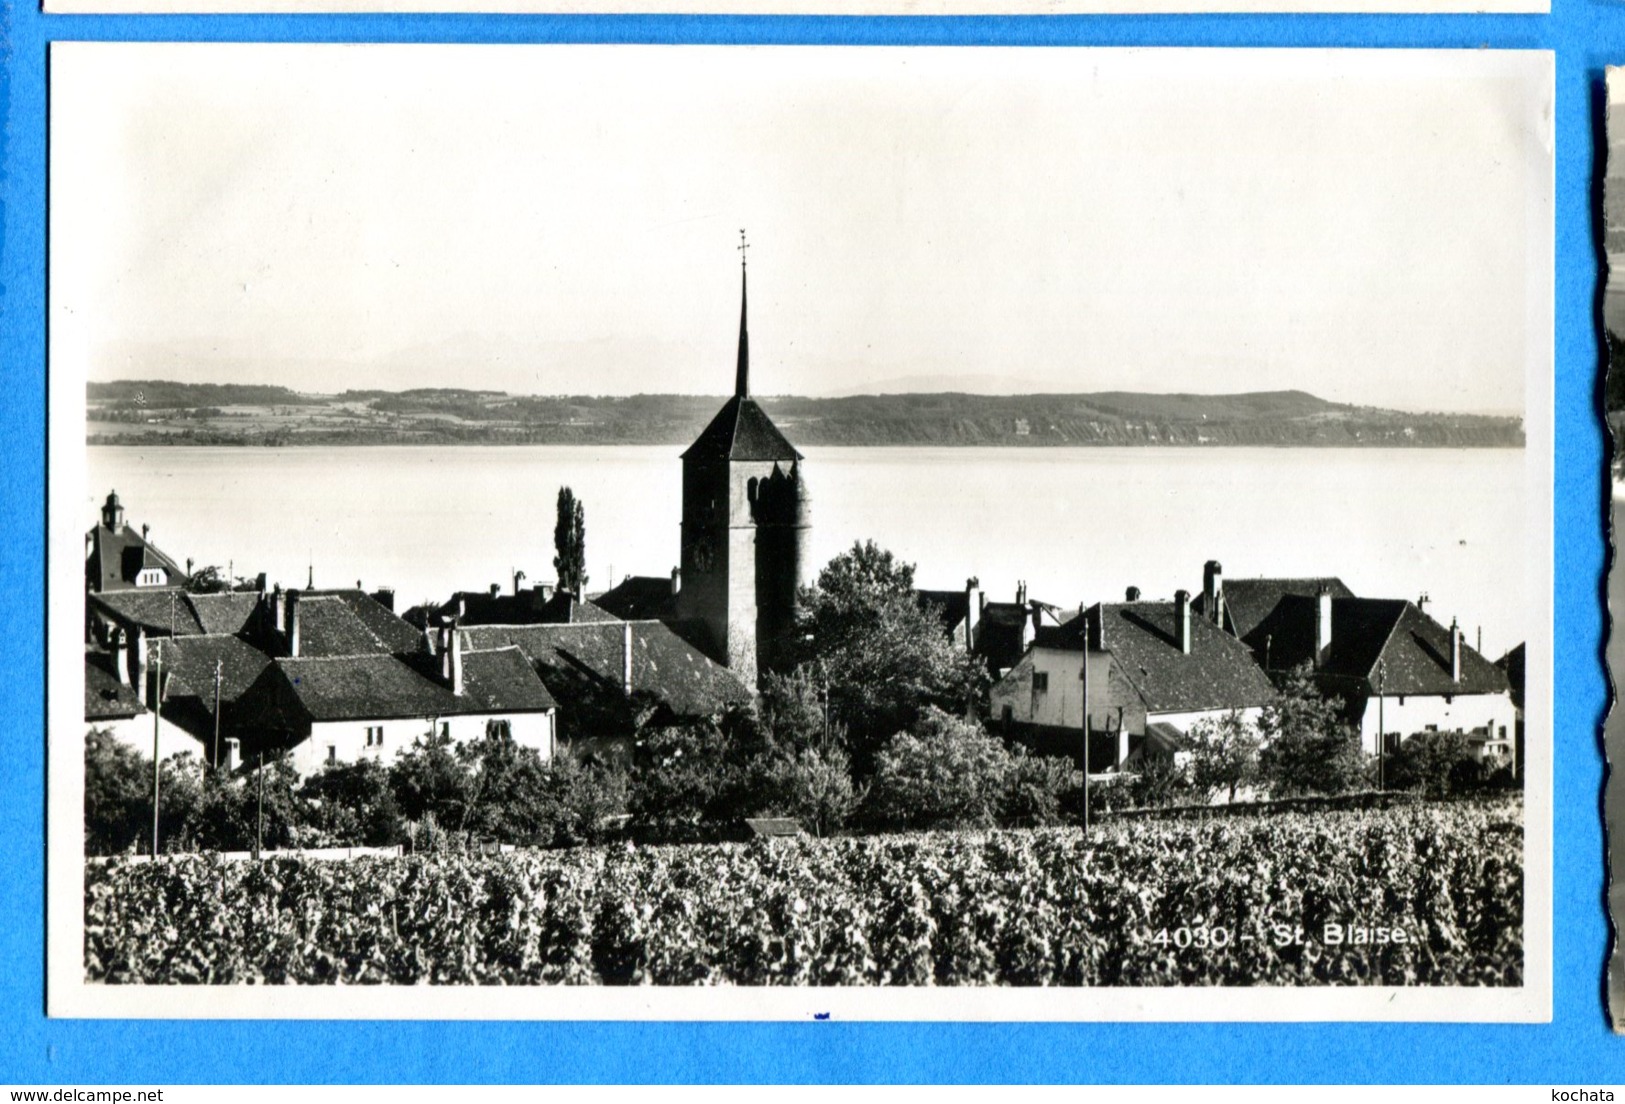 COV1190, St. Blaise, 4030, SG, Circulée 1928 - Saint-Blaise